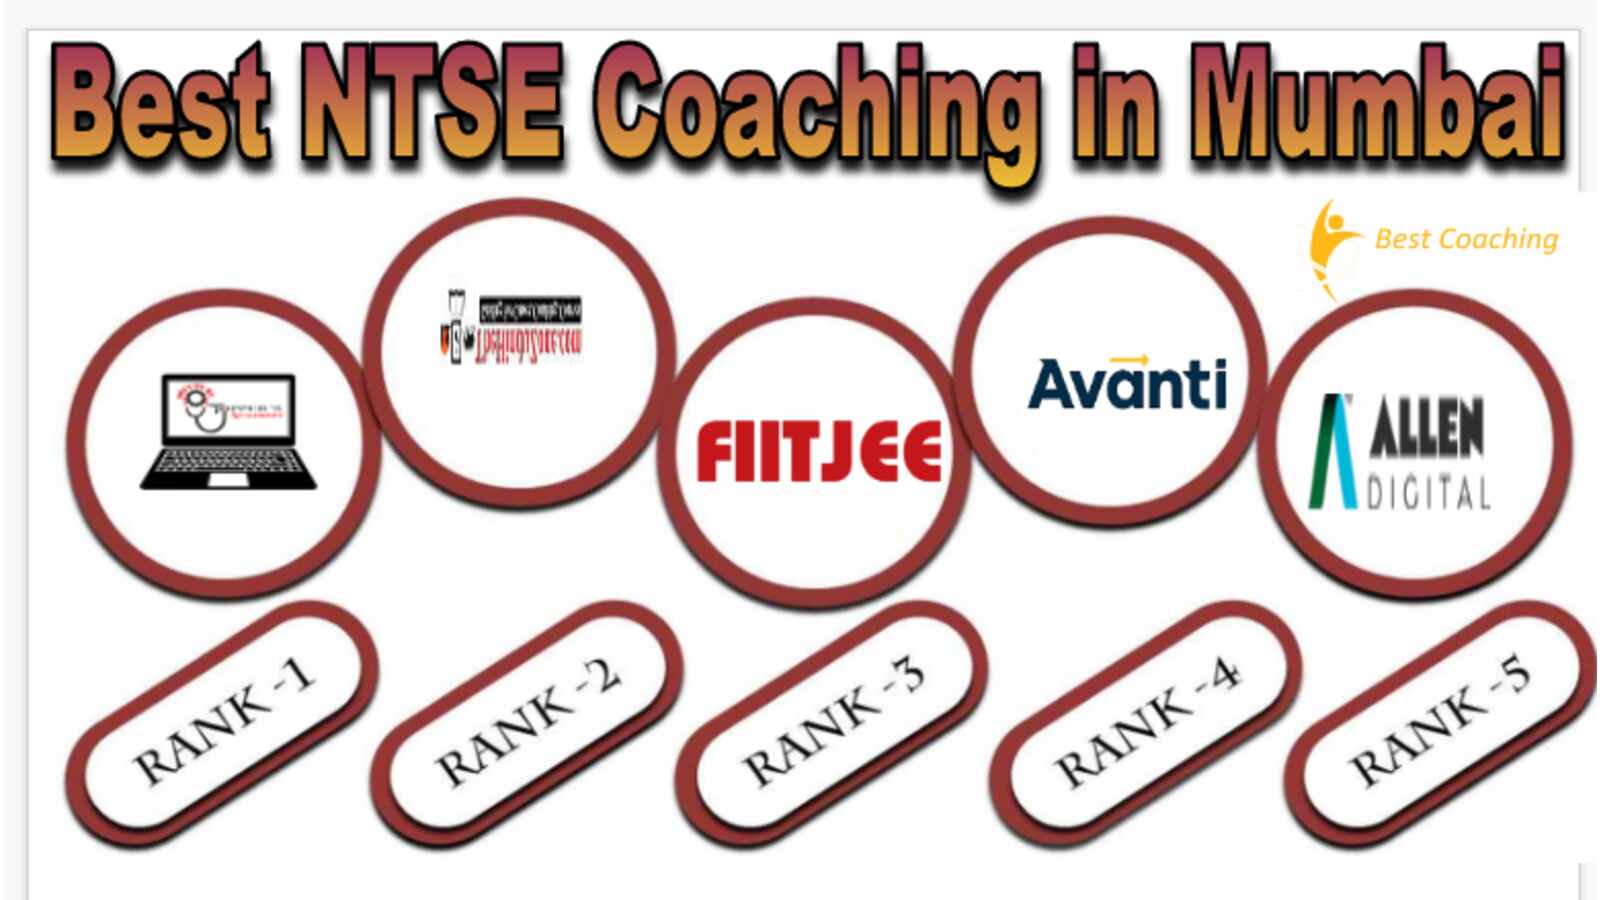 Best NTSE Coaching in Mumbai